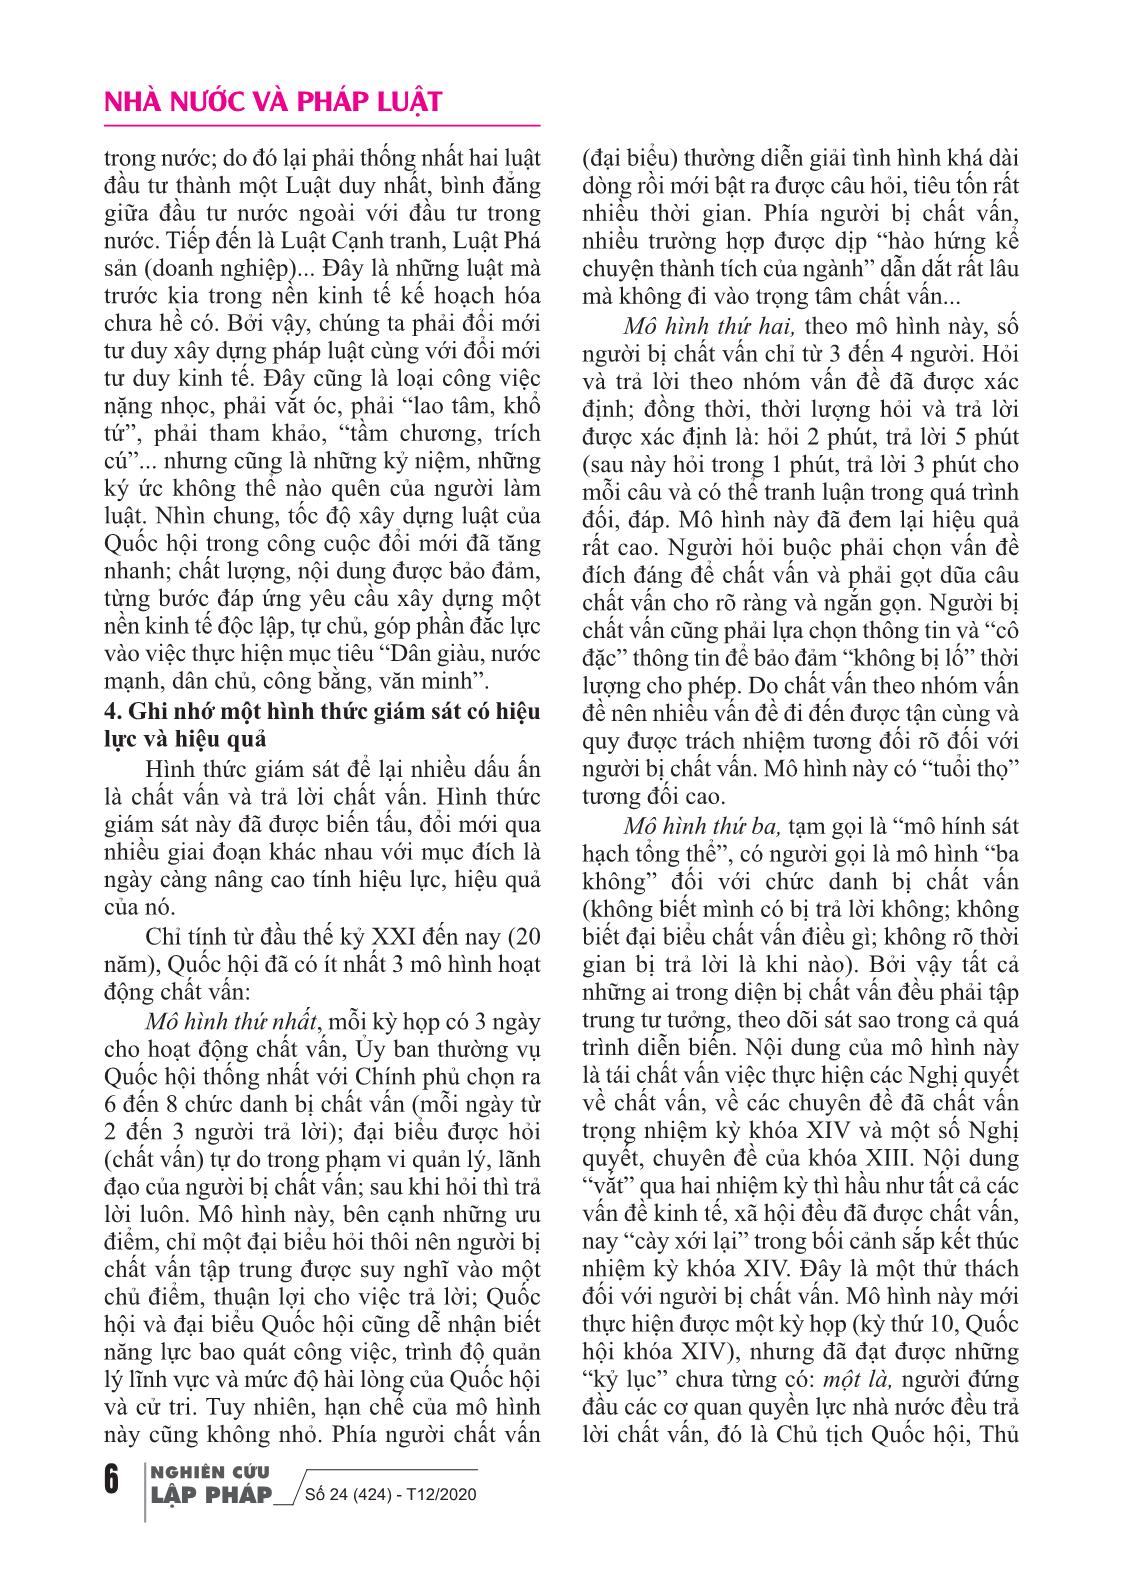 Tạp chí Nghiên cứu lập pháp - Số 24 (424) - Kỳ 2, Tháng 12/2020 trang 7